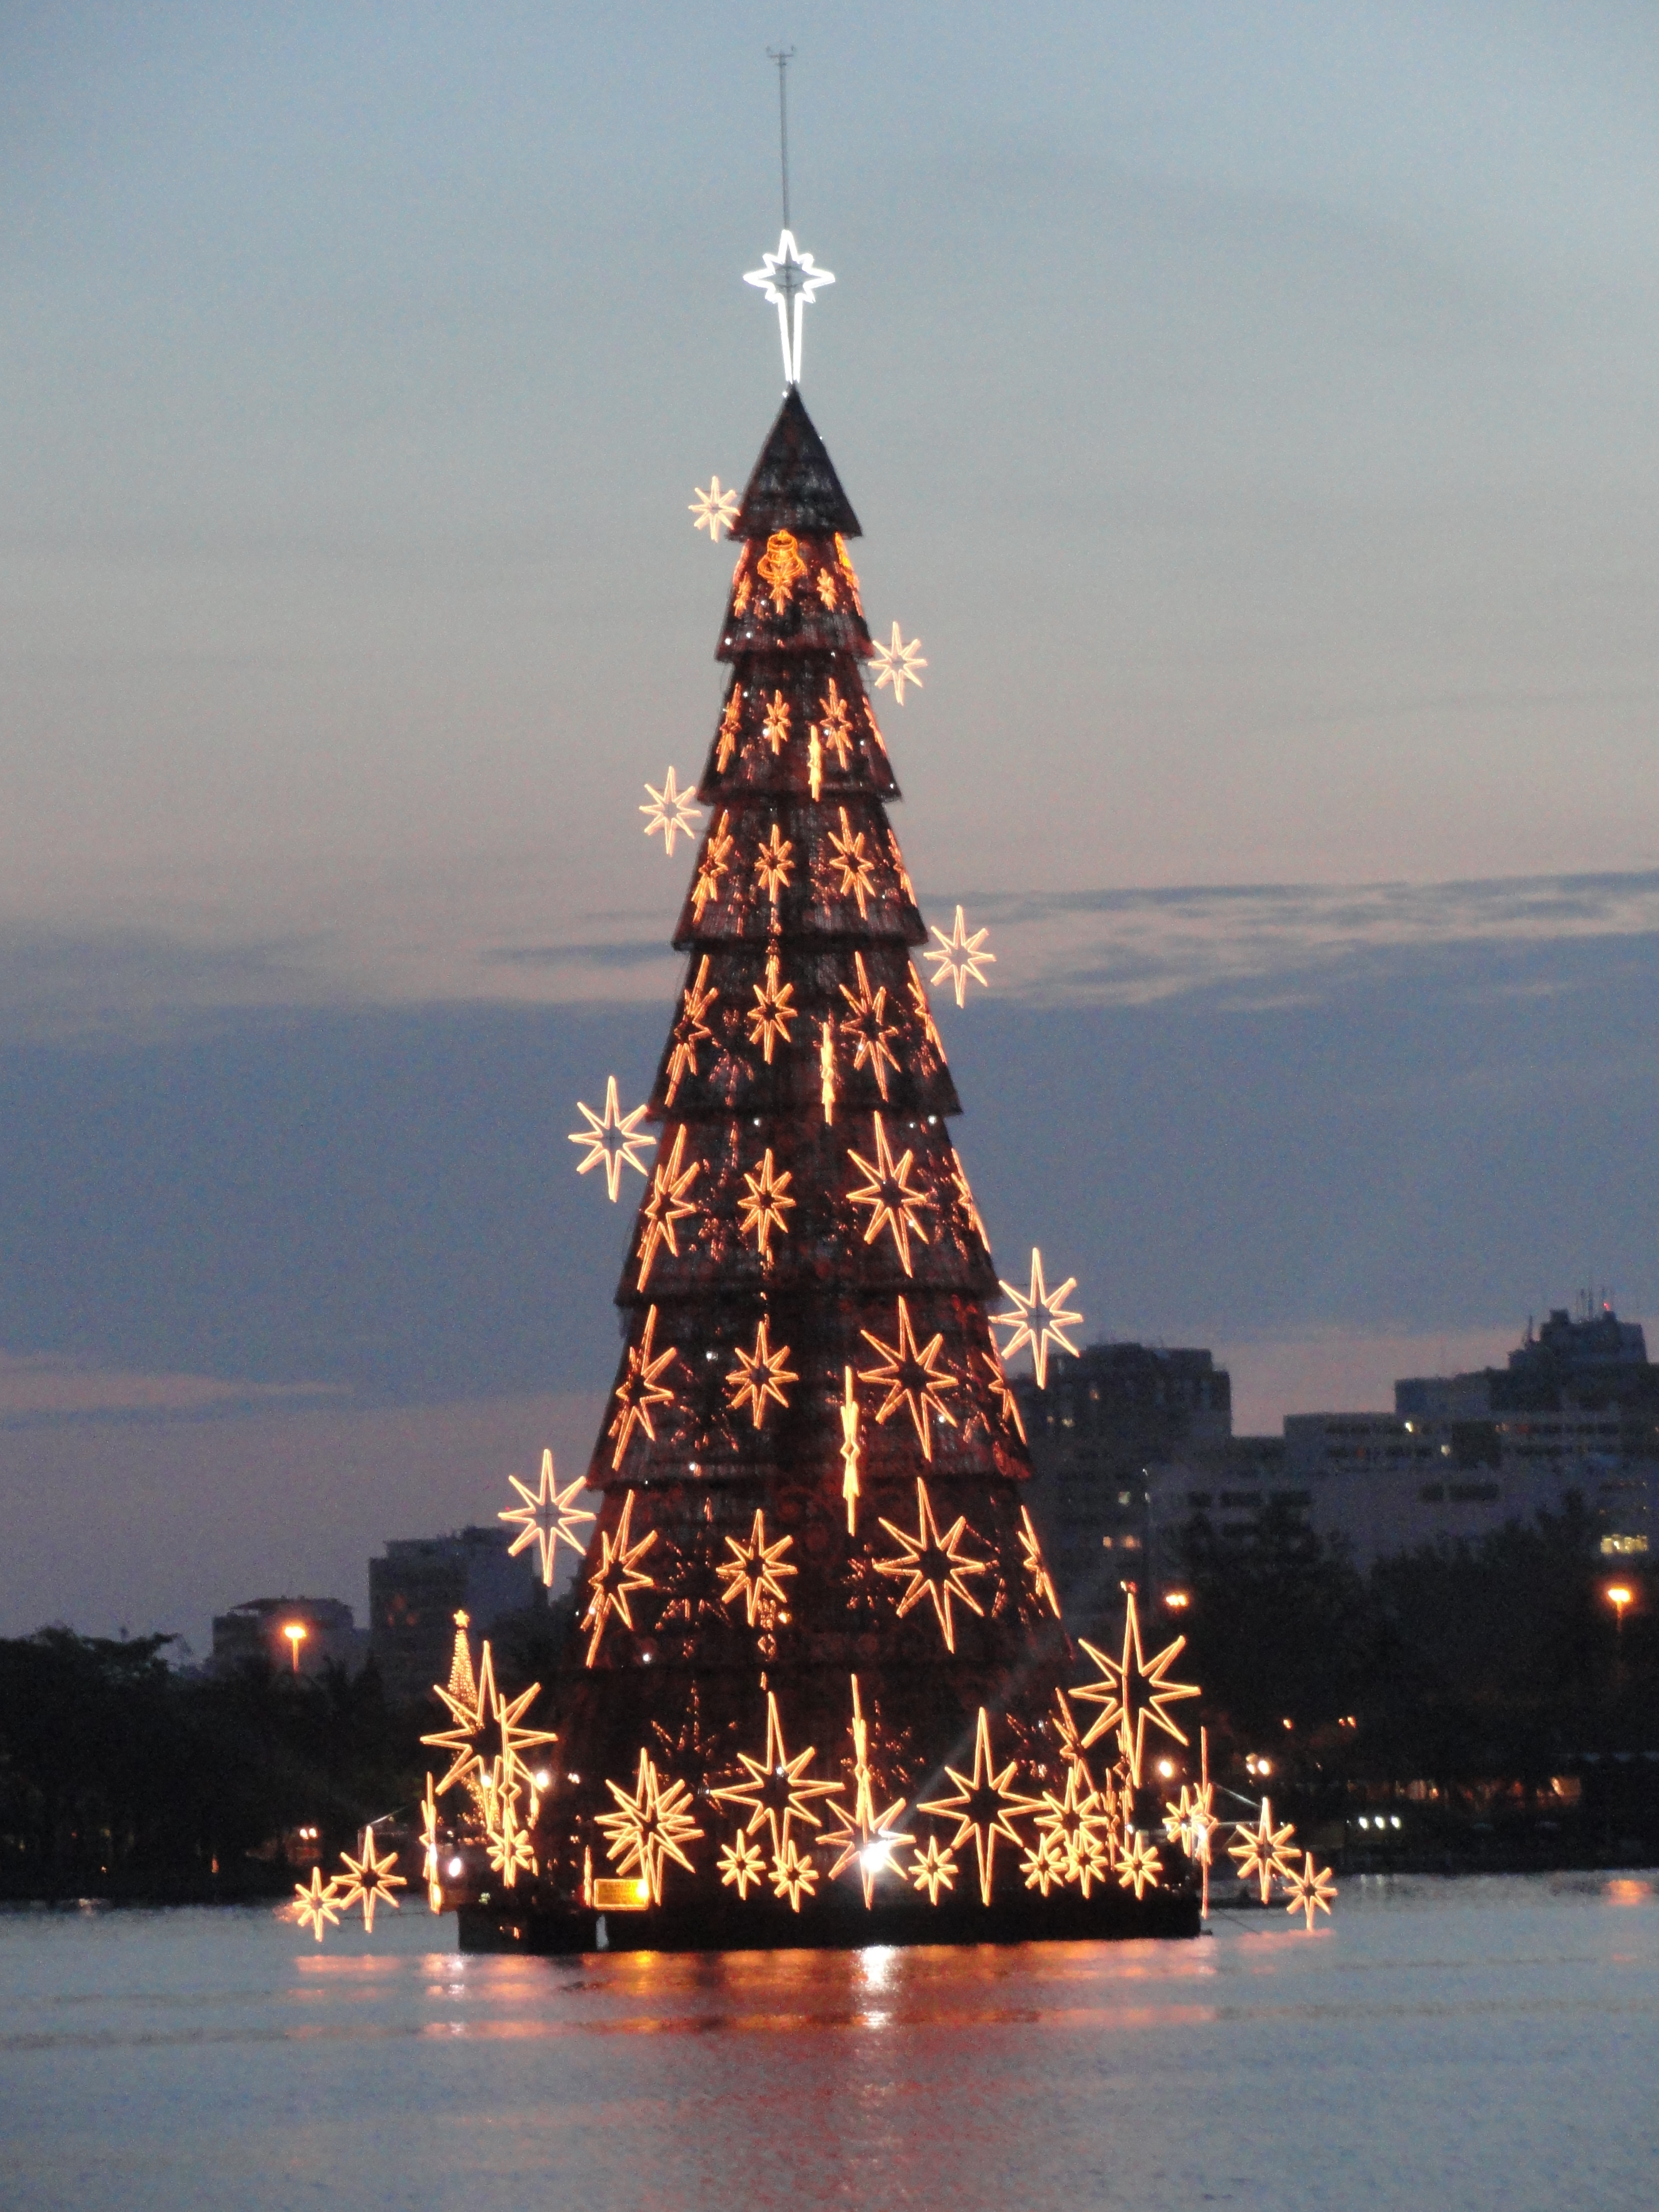 Árvore da Lagoa: A árvore de Natal da Lagoa Rodrigo de Freitas